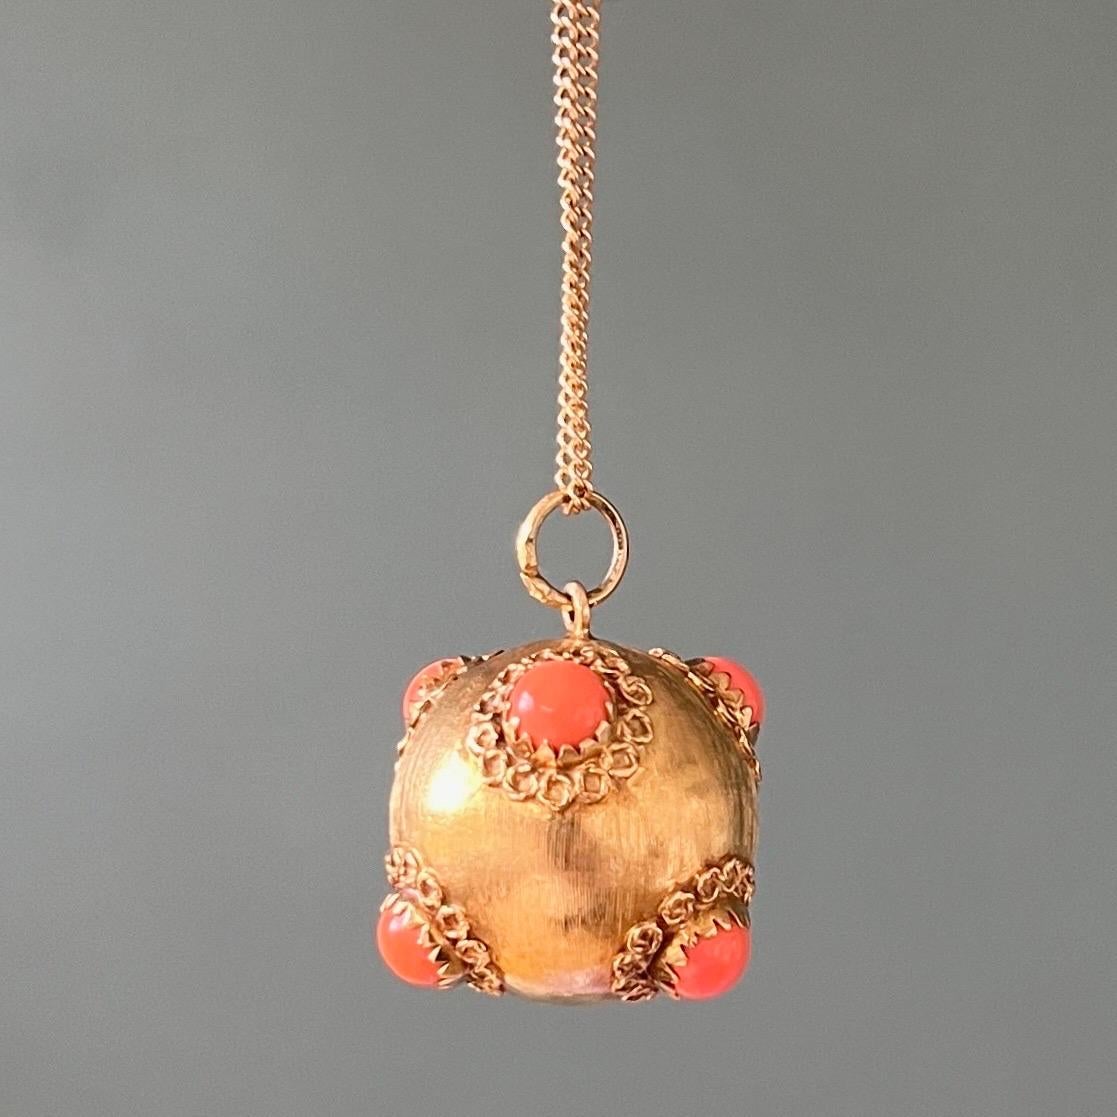 Magnifique pendentif en or 18 carats en forme de boule ou de Sputnik, en forme de porte-bonheur étrusque vénitien. Cette breloque italienne est sertie de six pierres précieuses en corail taillé en cabochon, tandis que la surface en or est décorée de